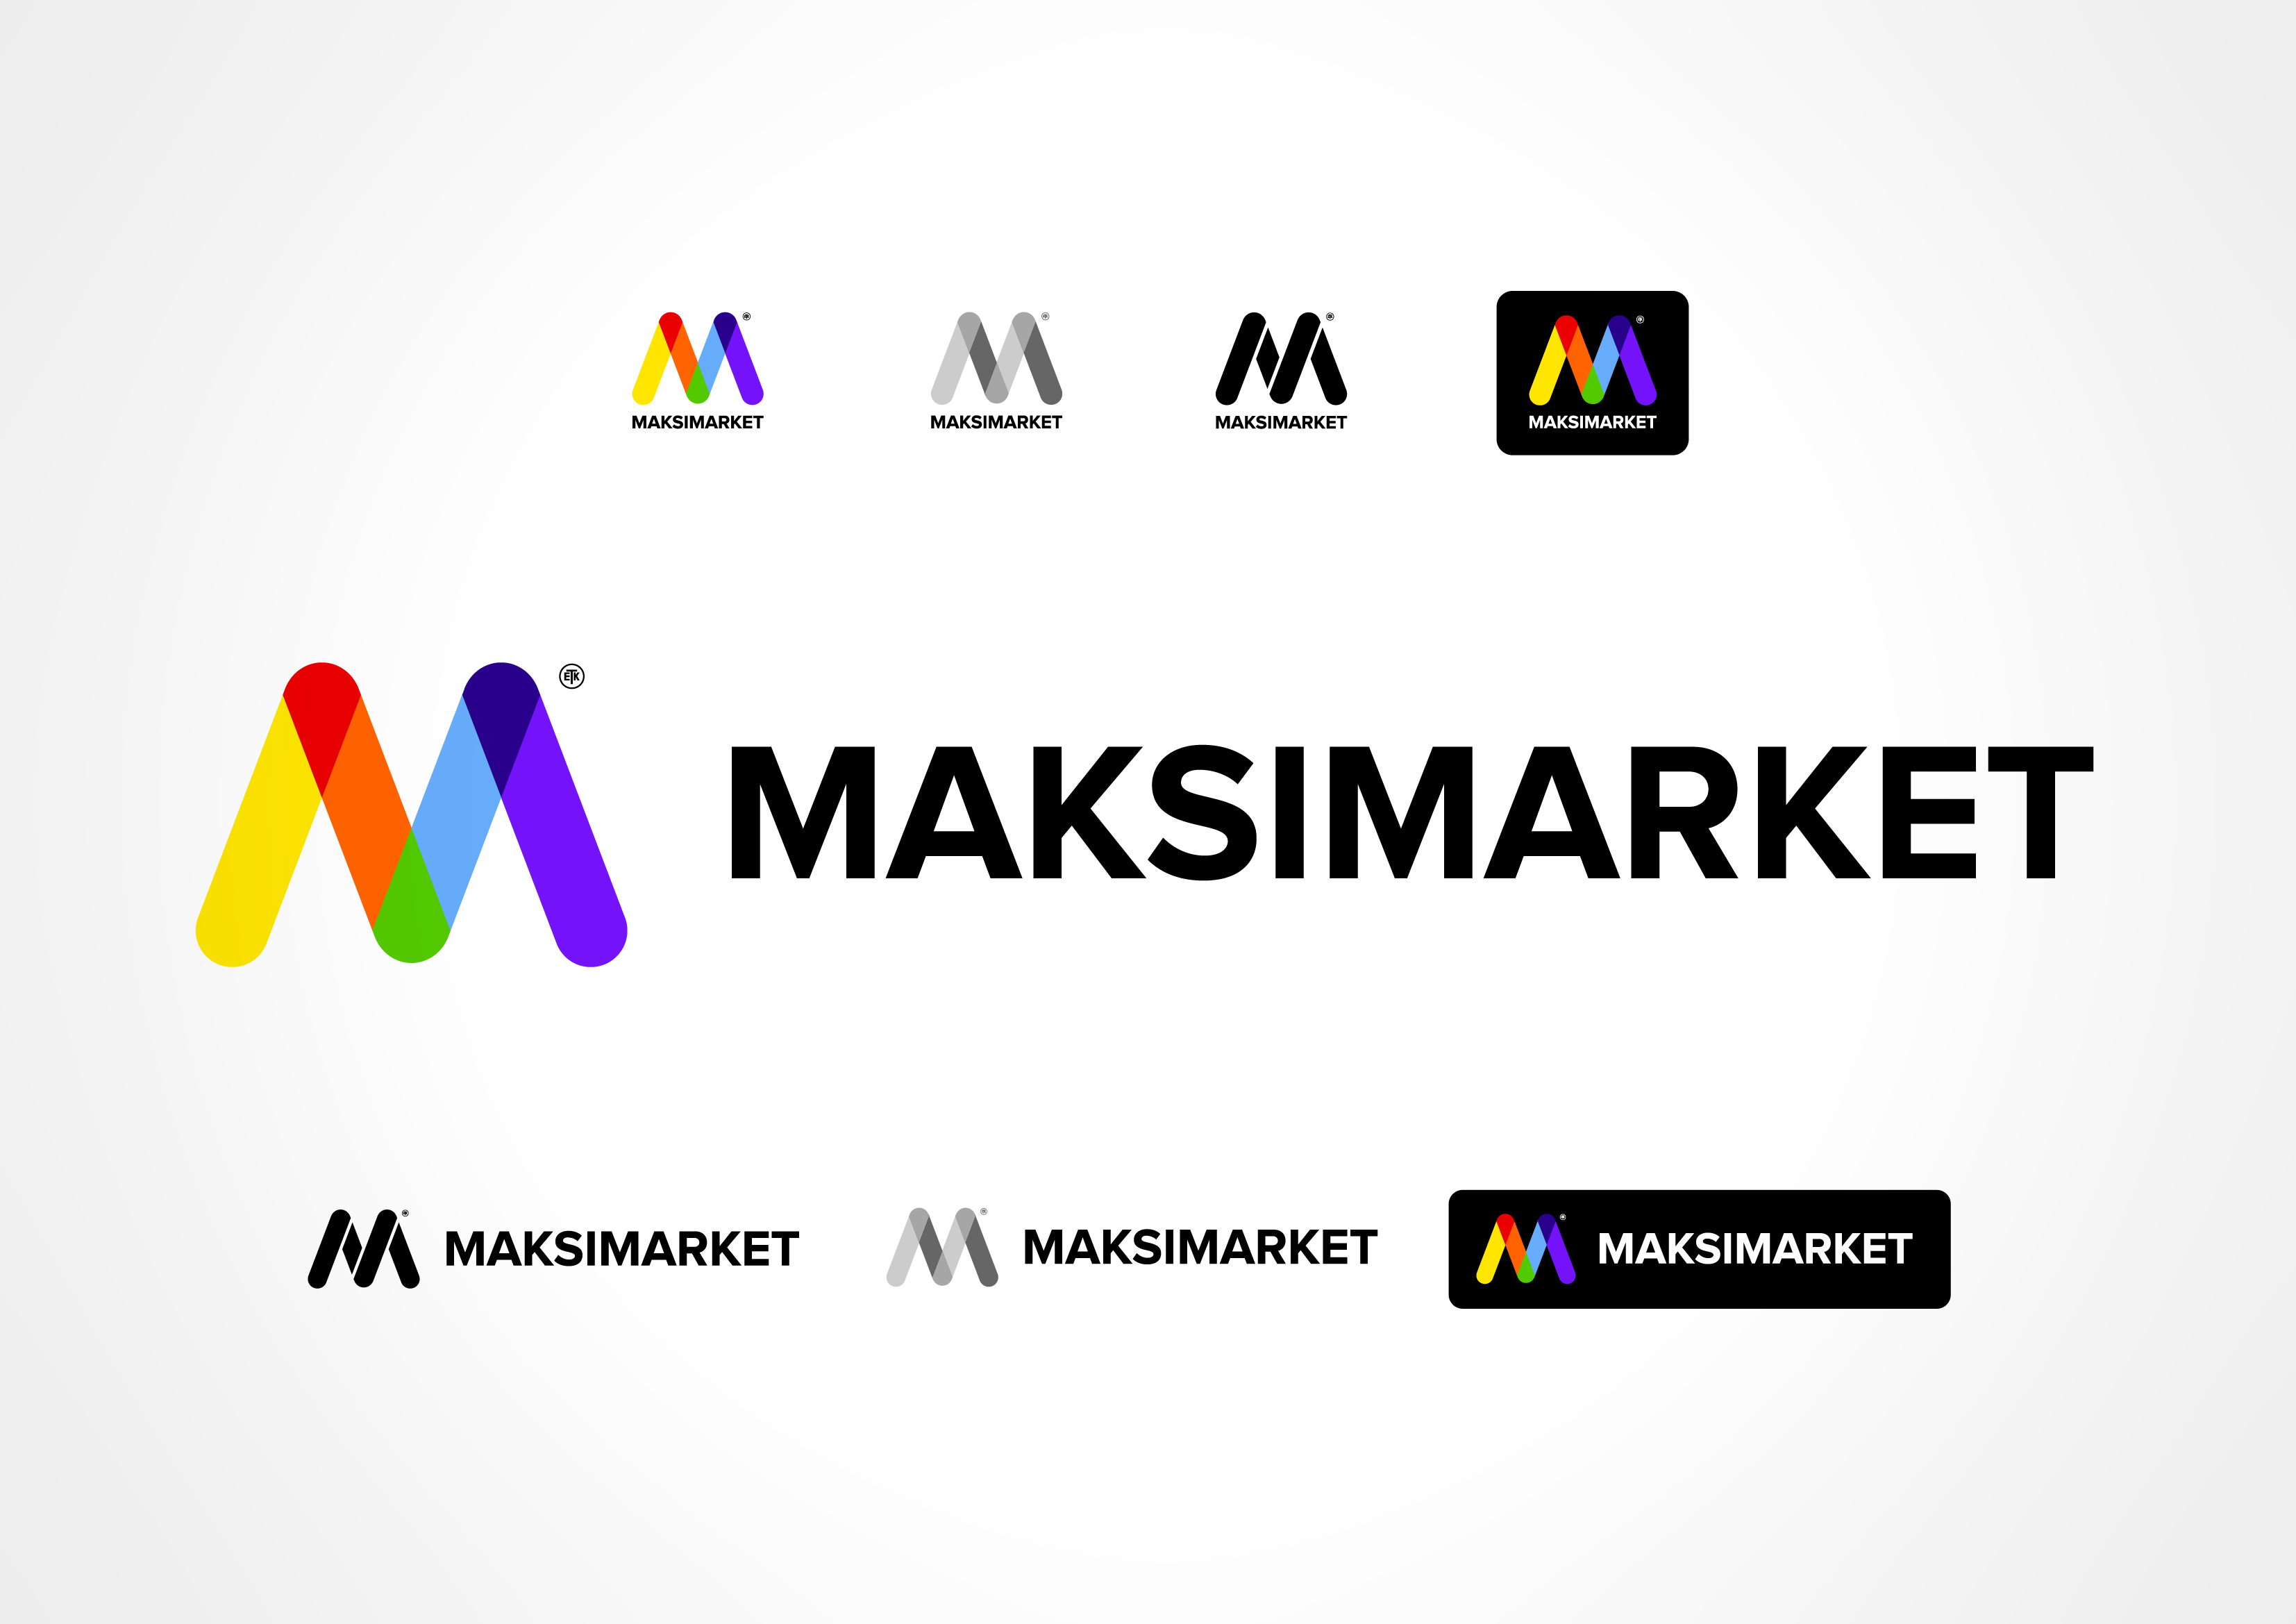 Maksimarket – The Makeover